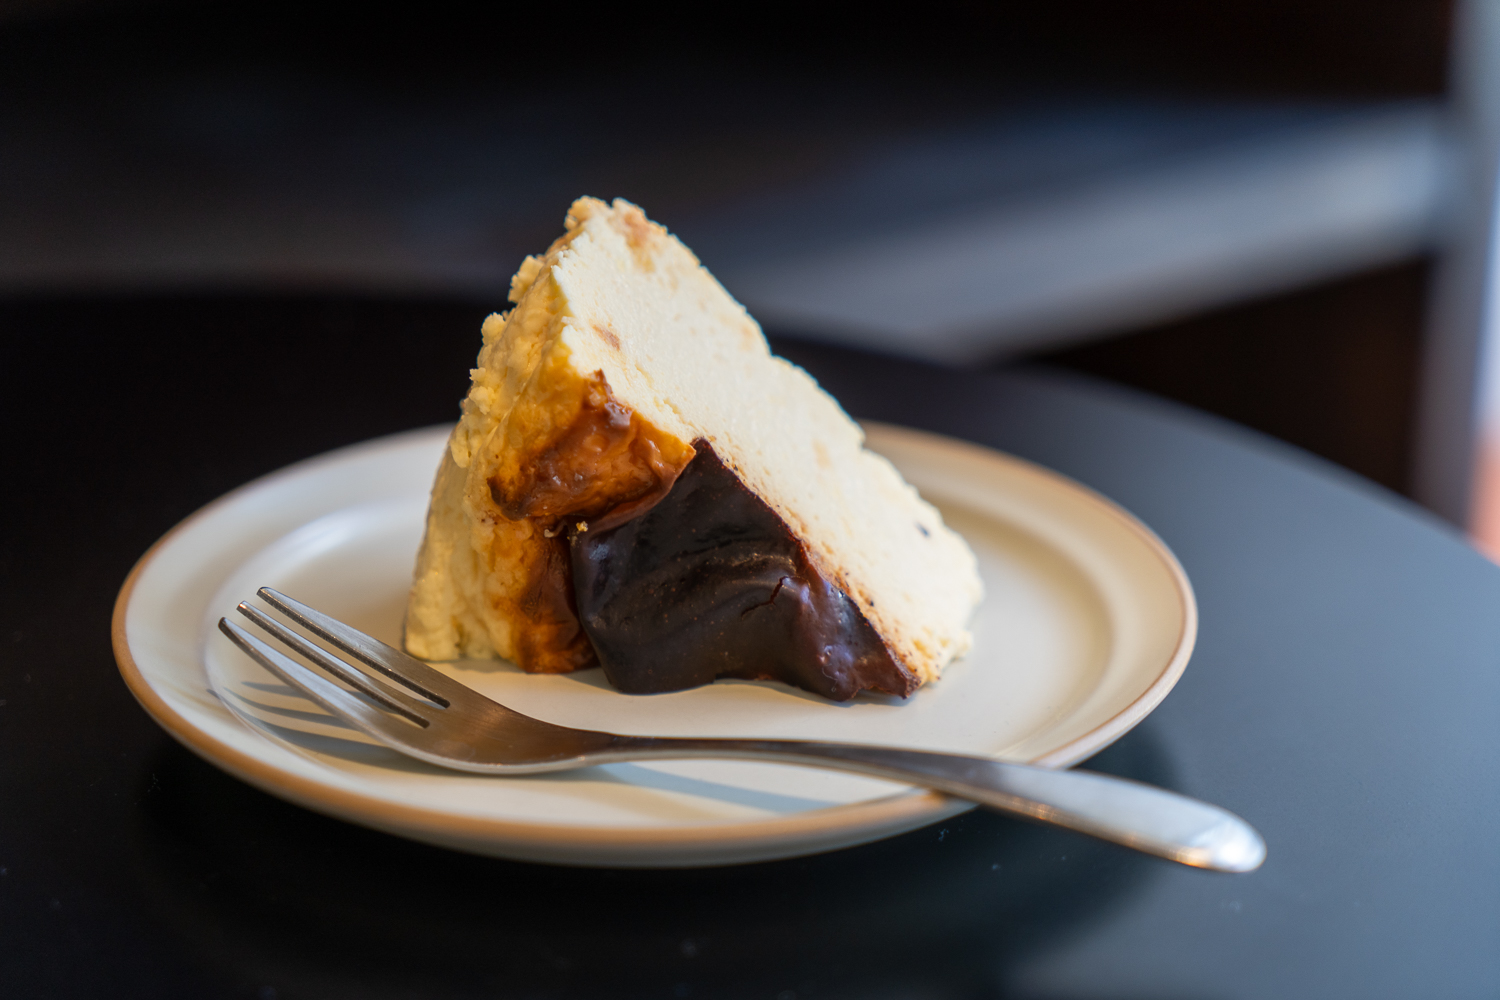 バスク風チーズケーキ プレーン550円。季節ごとにフレーバーが異なるチーズケーキもある。